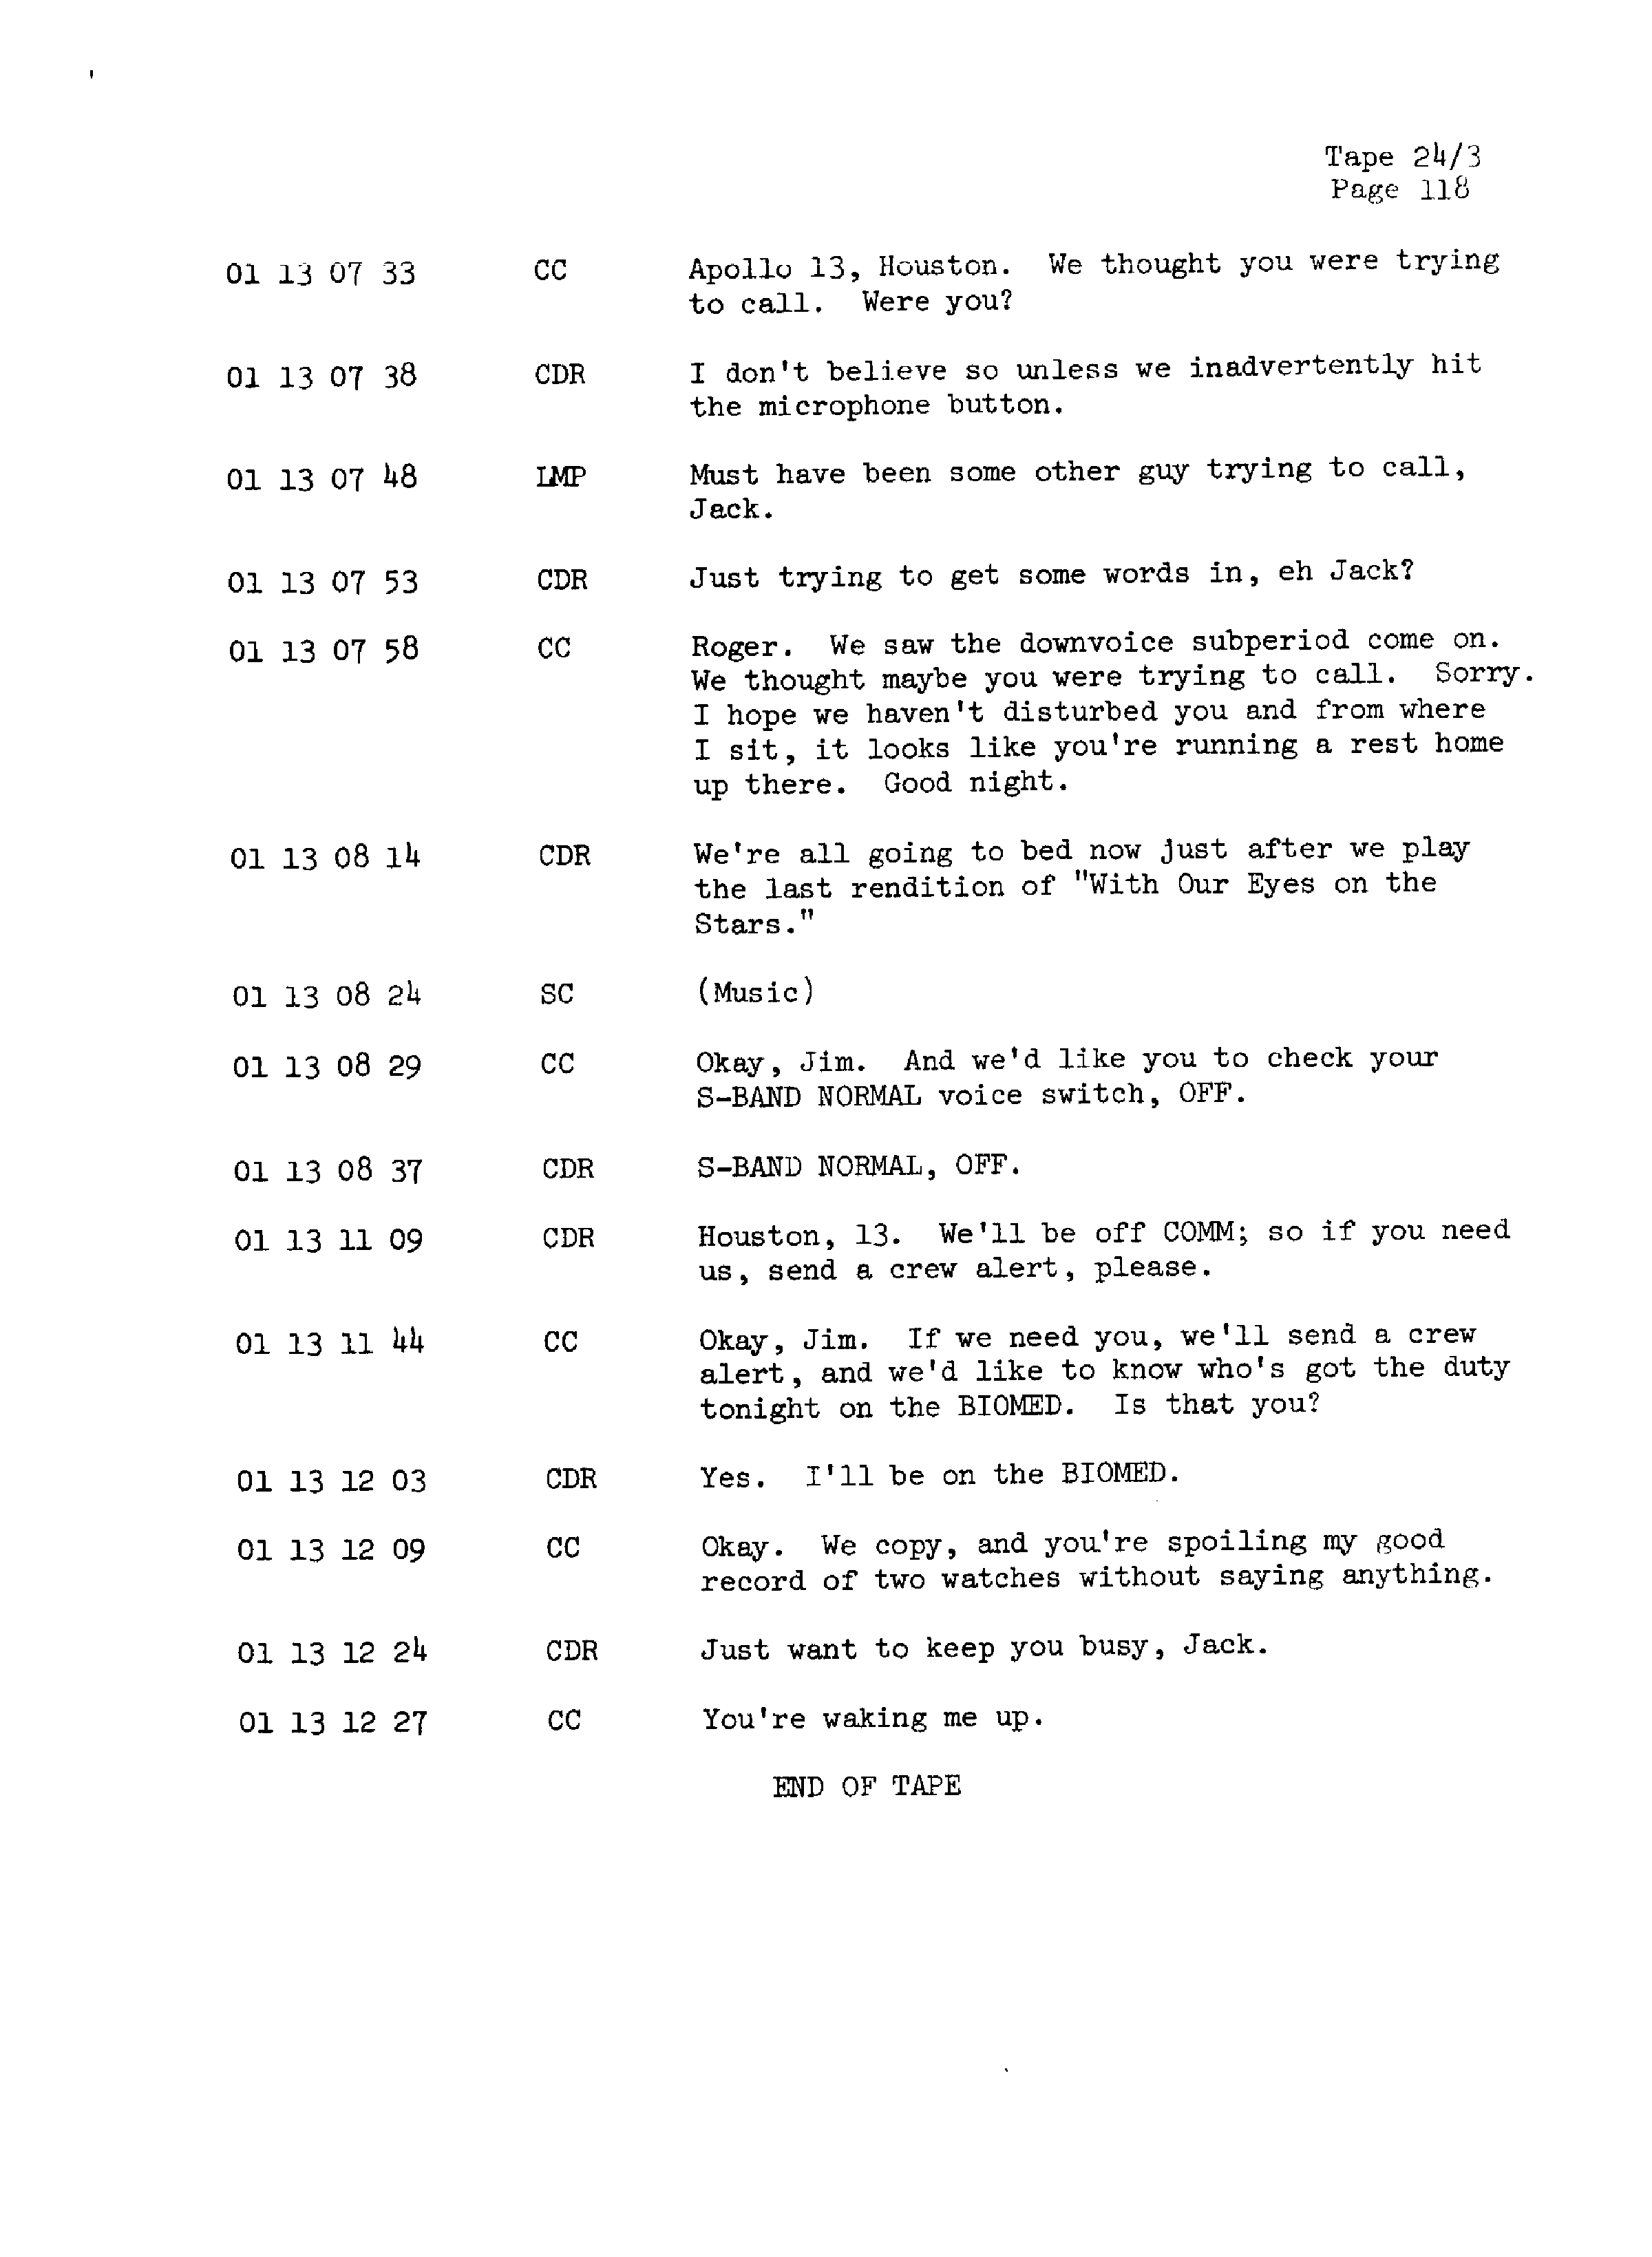 Page 125 of Apollo 13’s original transcript